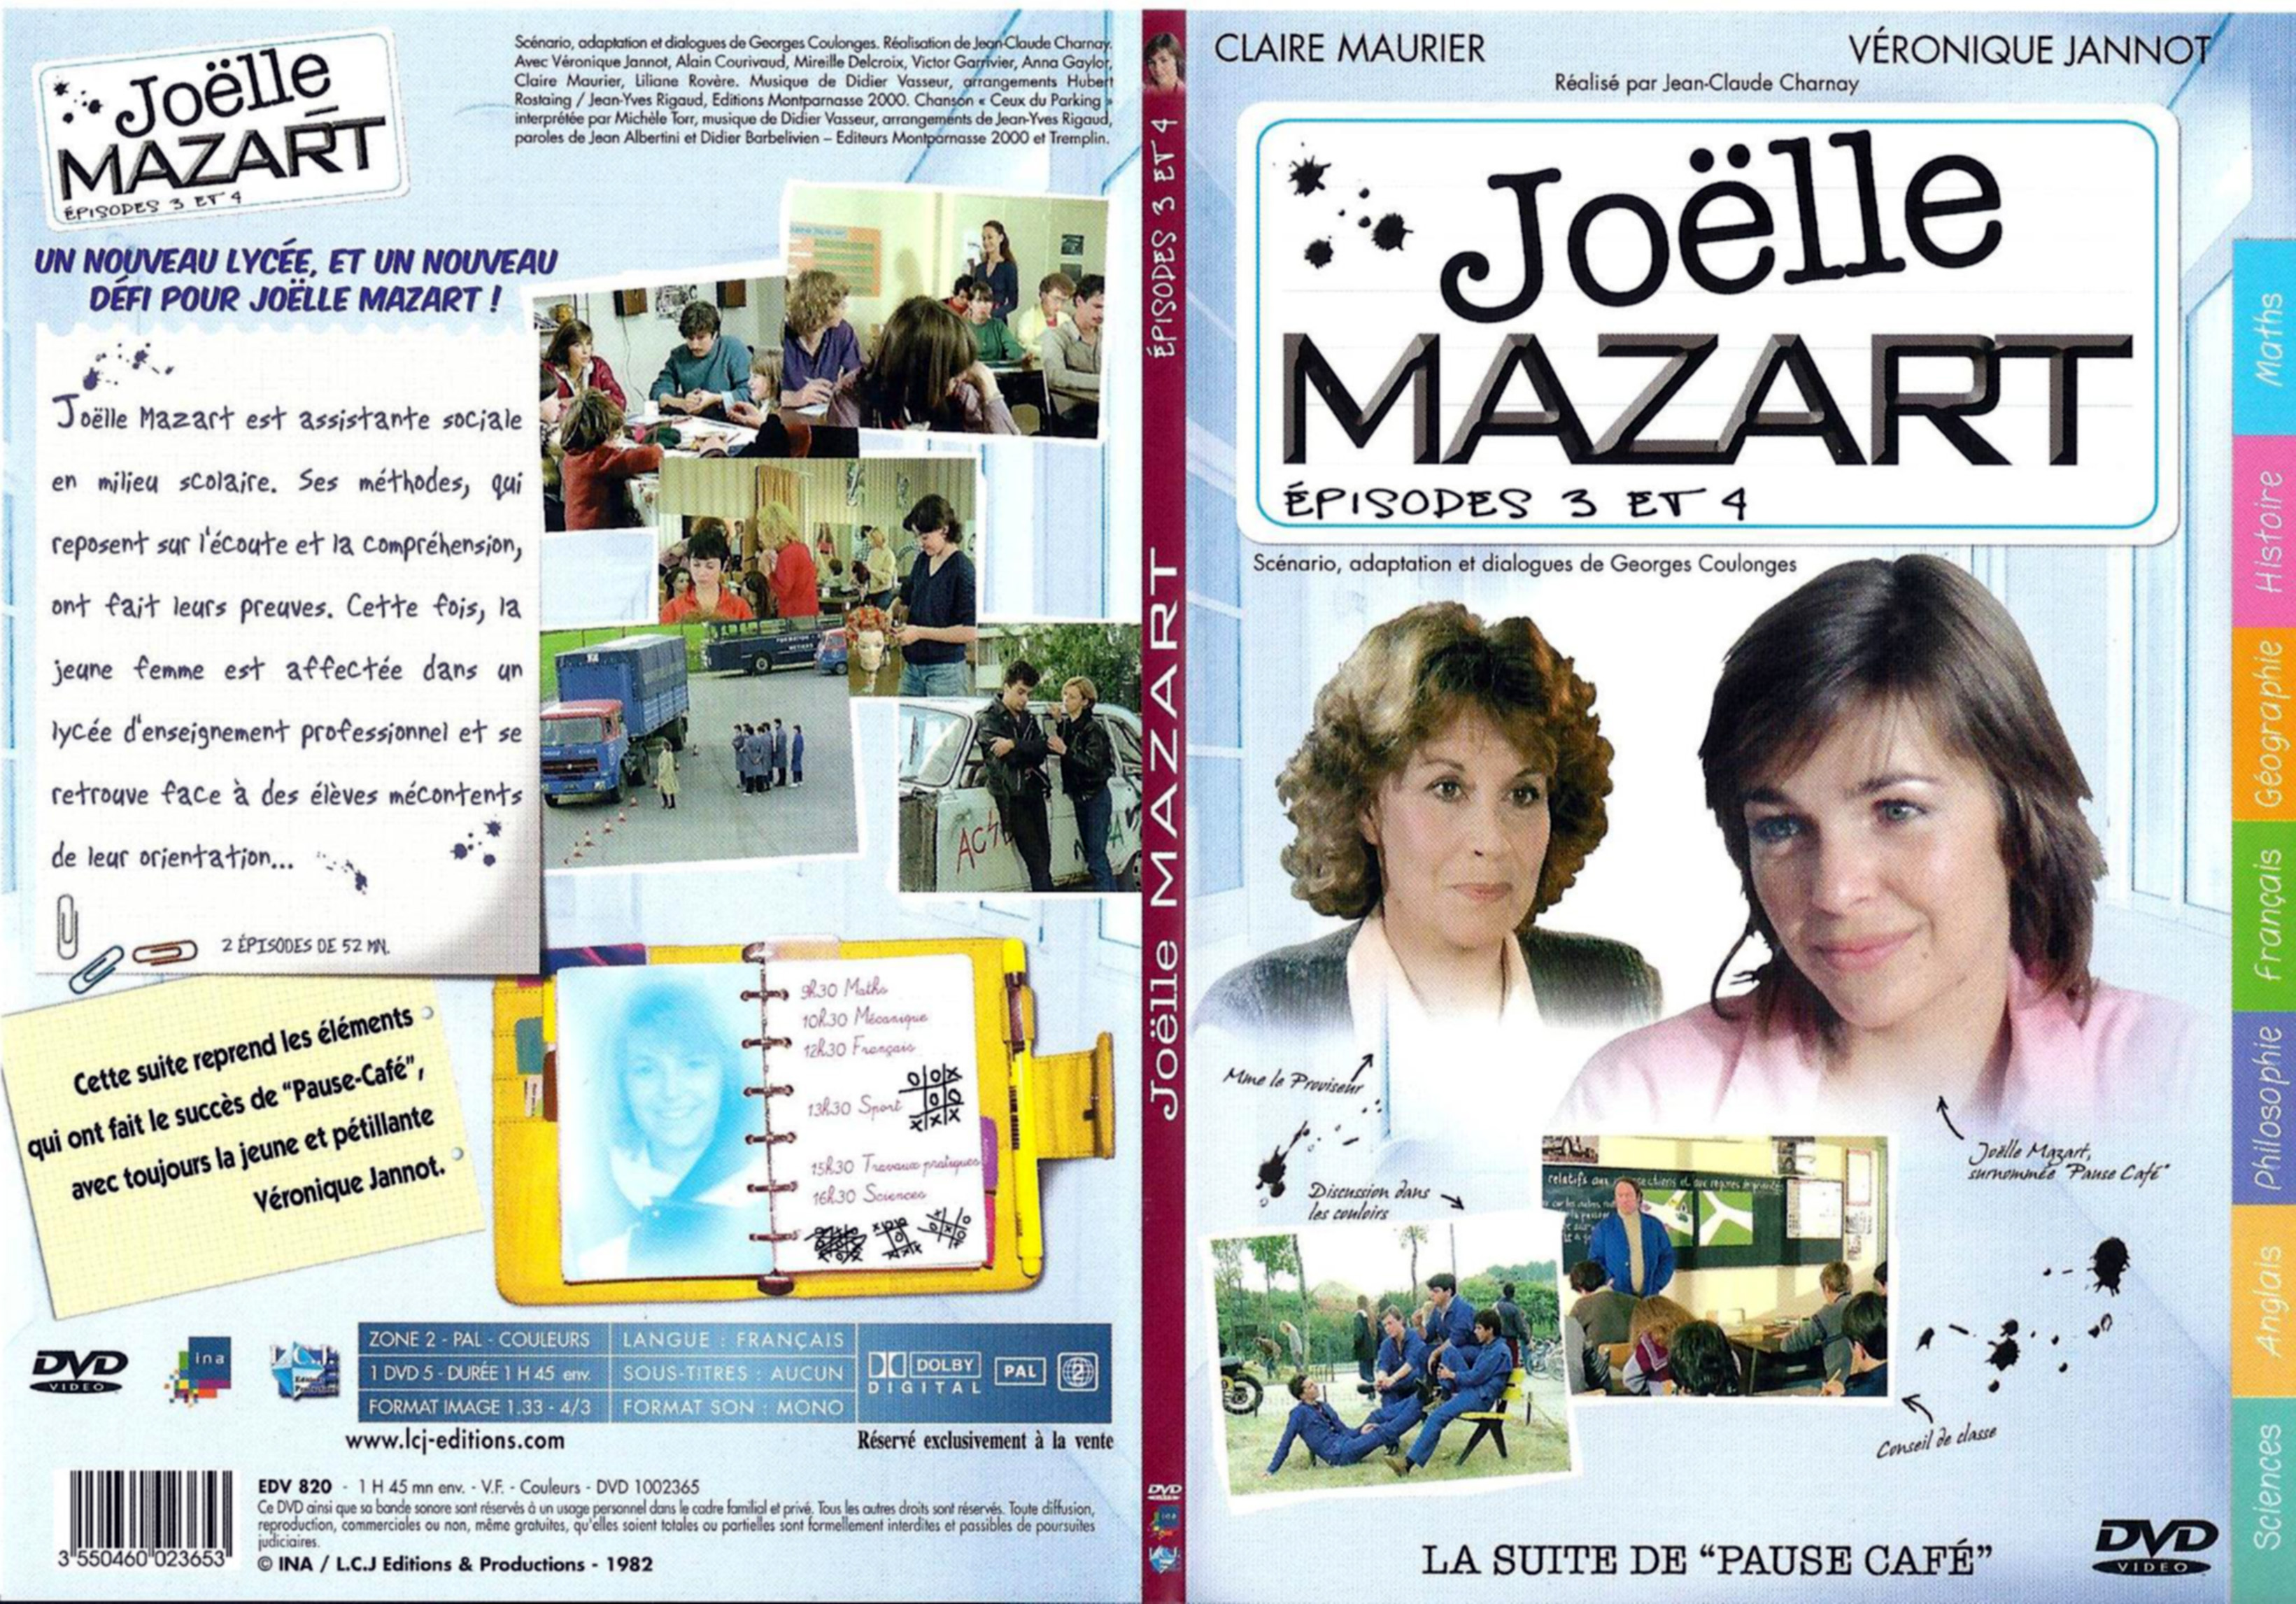 Jaquette DVD Joelle Mazart Episode 3 et 4